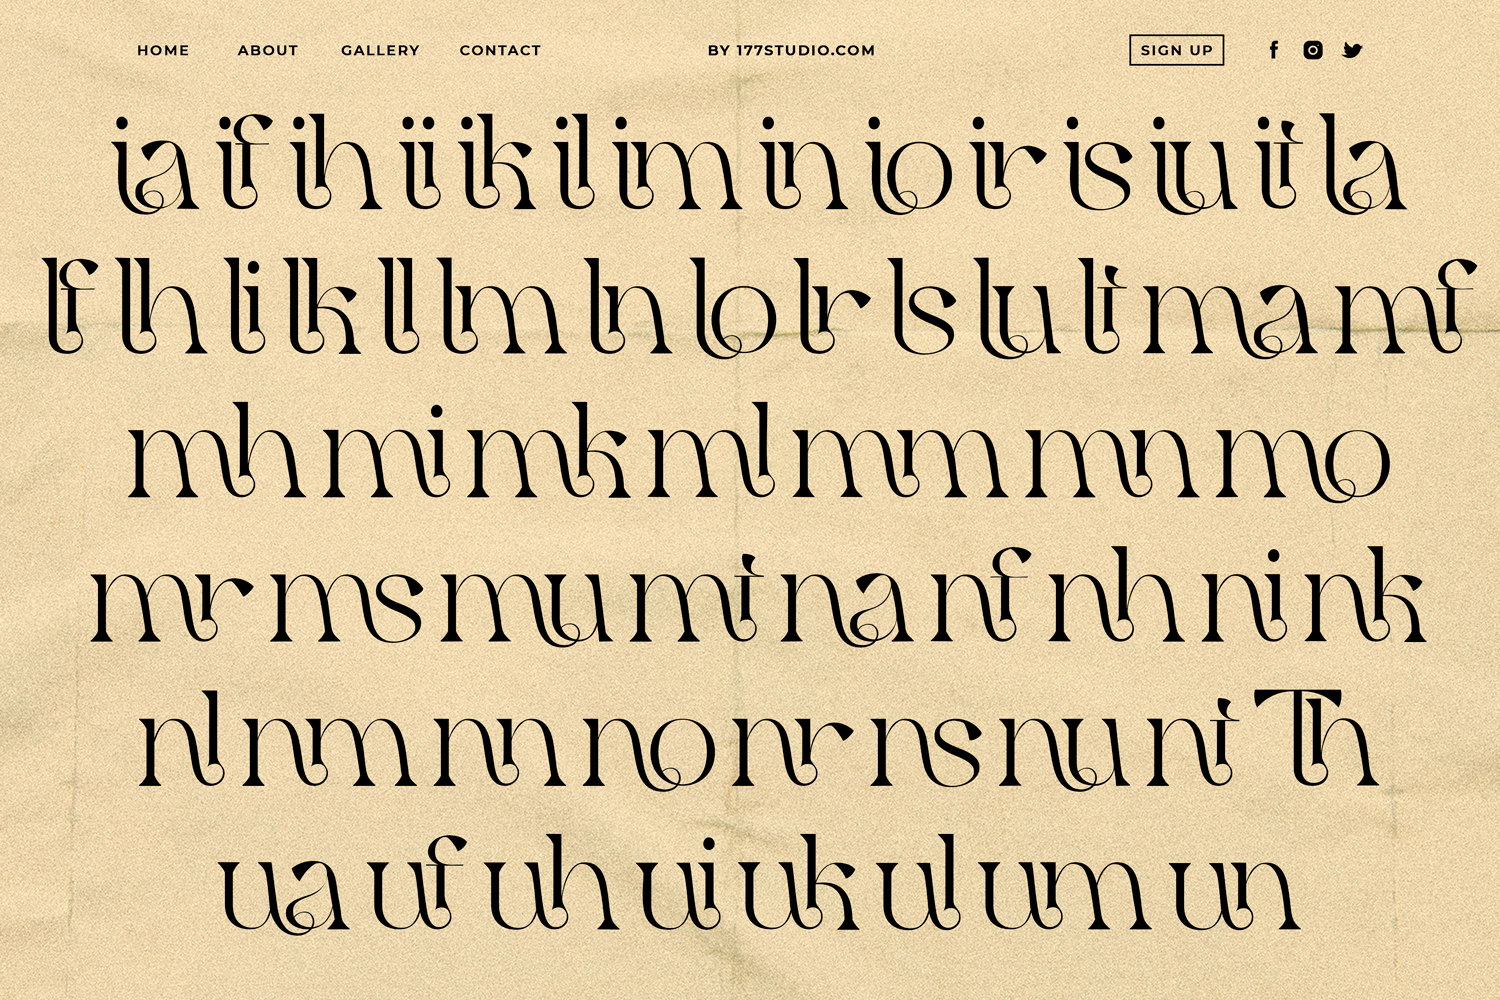 Qaitan Serif Font